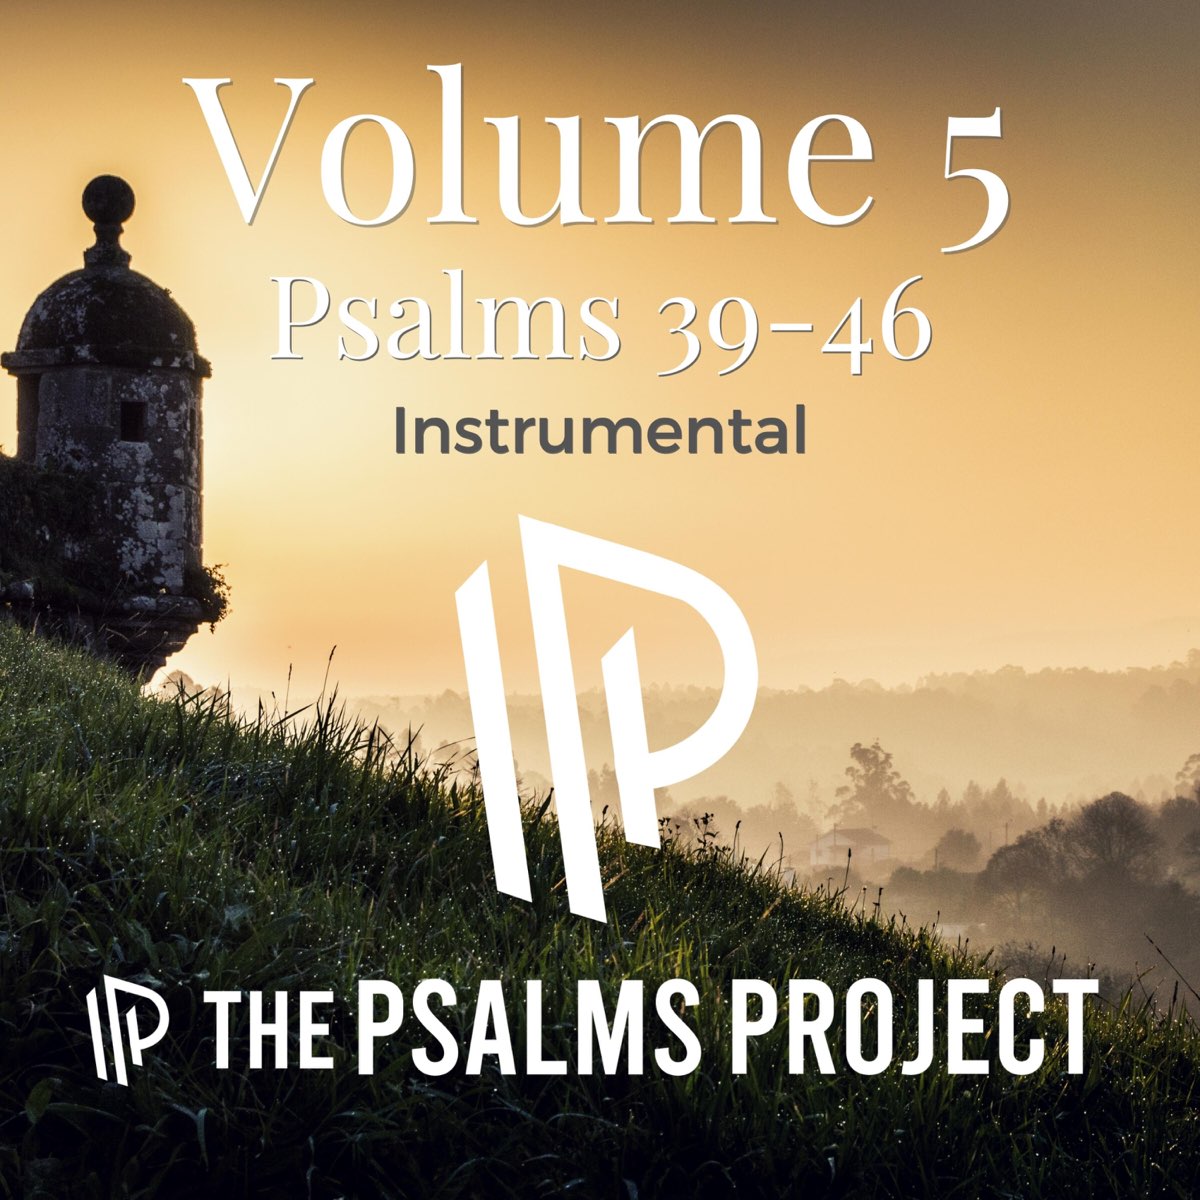 Псалом 39 слушать. Псалом 39. Psalm 5:9-13 лого. Psalm 5 9-13 логотип. Psalm 5:9 - 1.3.